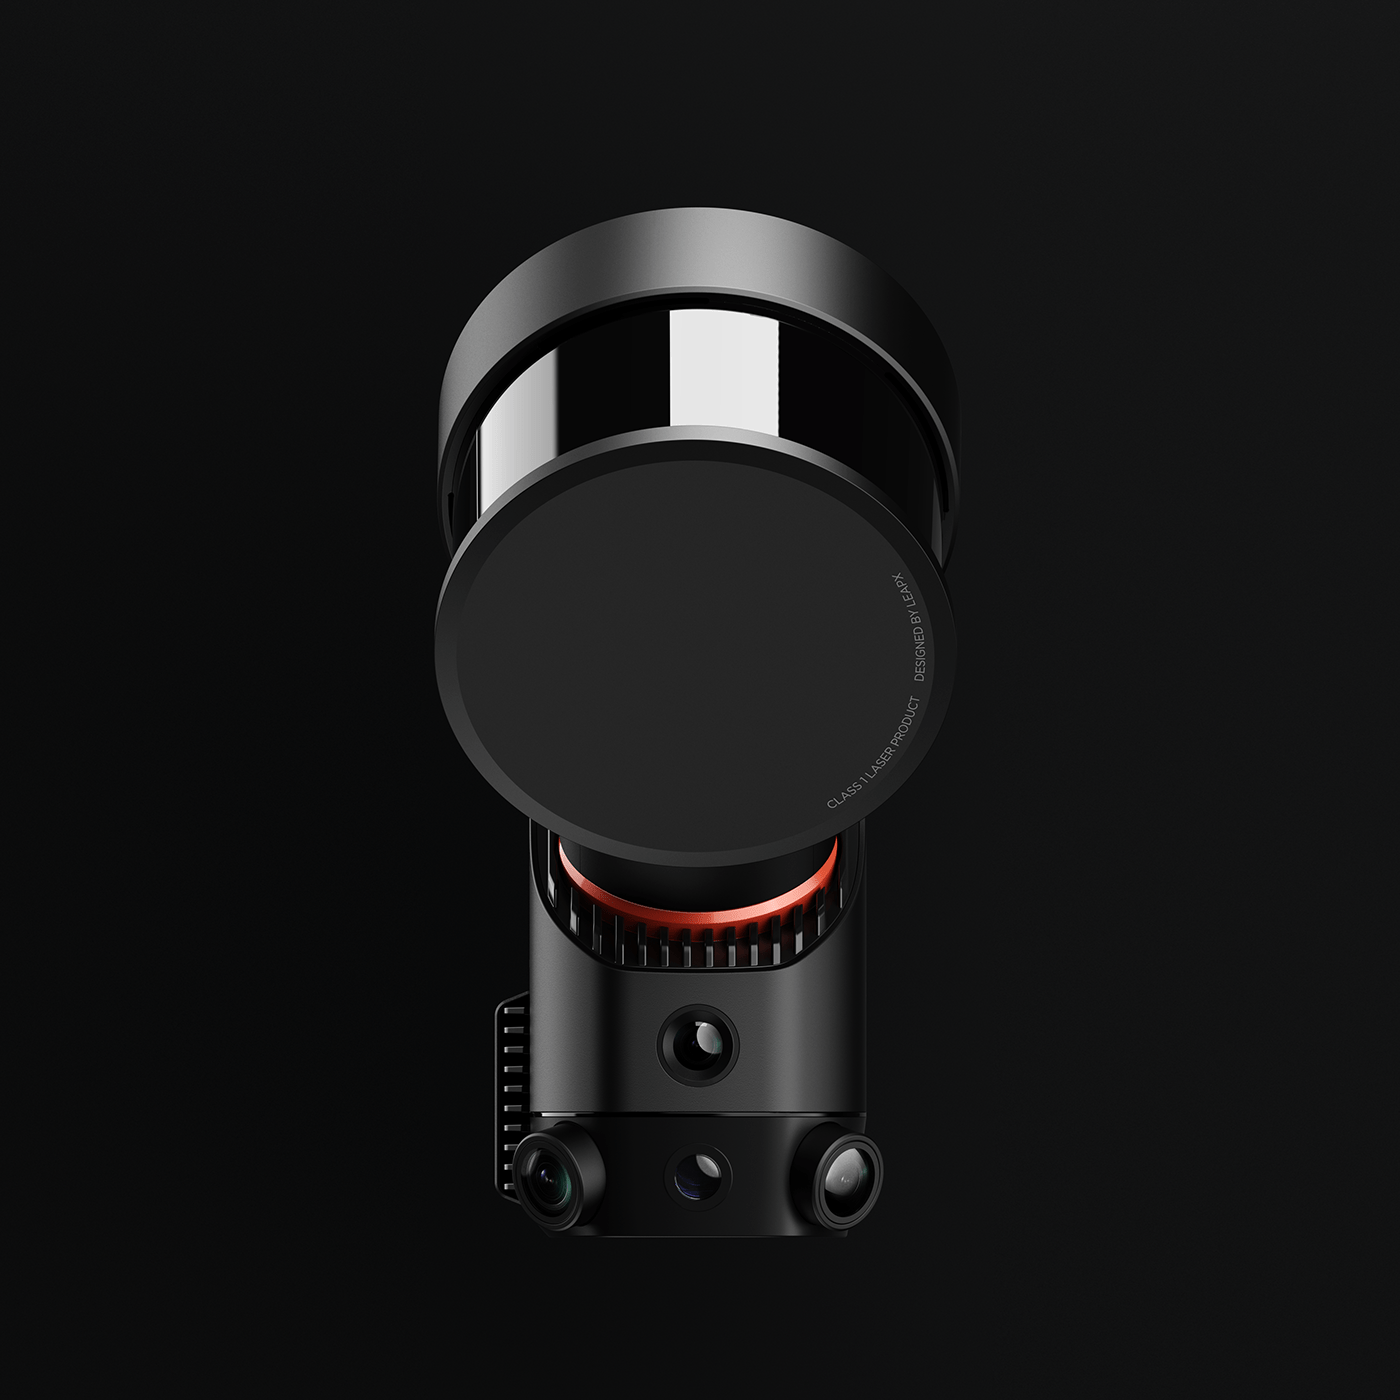 LiDAR scanner camera handheld industrial design  concept LeapX